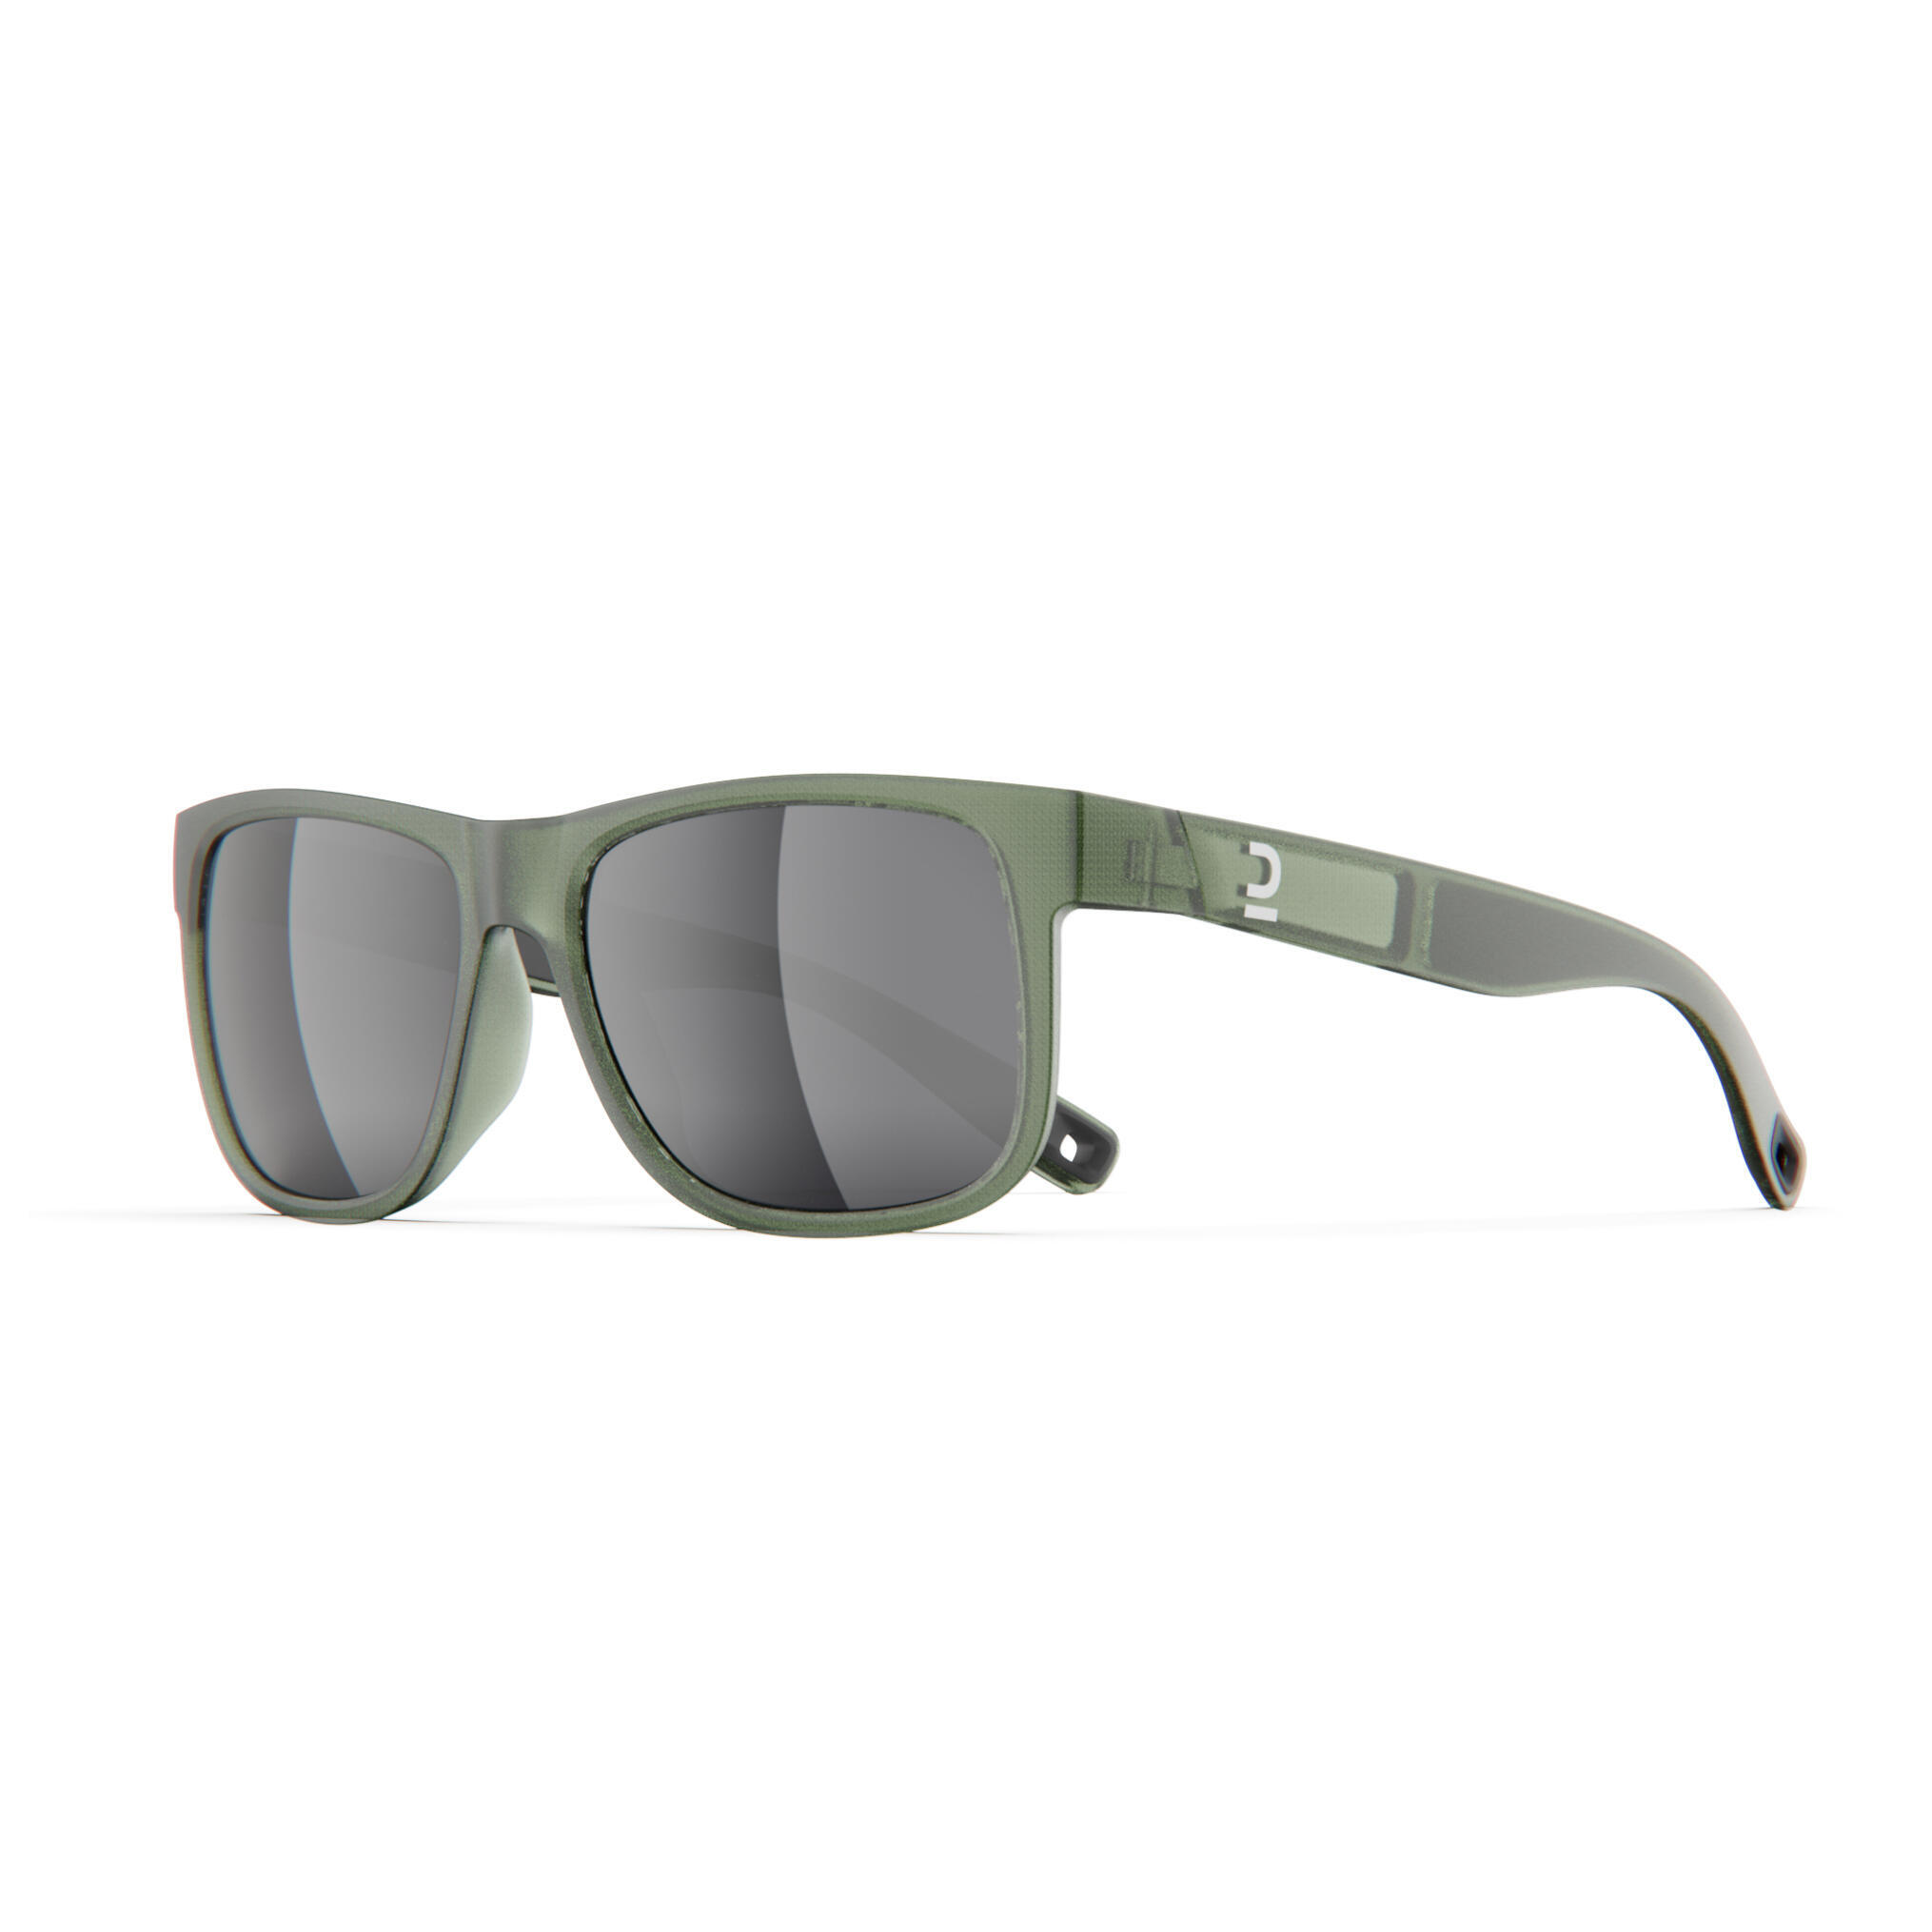 Очки солнцезащитные Quechua MH530 для походов, категории 3, хаки / серебристый / лаврово-зеленый солнцезащитные очки zara bridge хаки